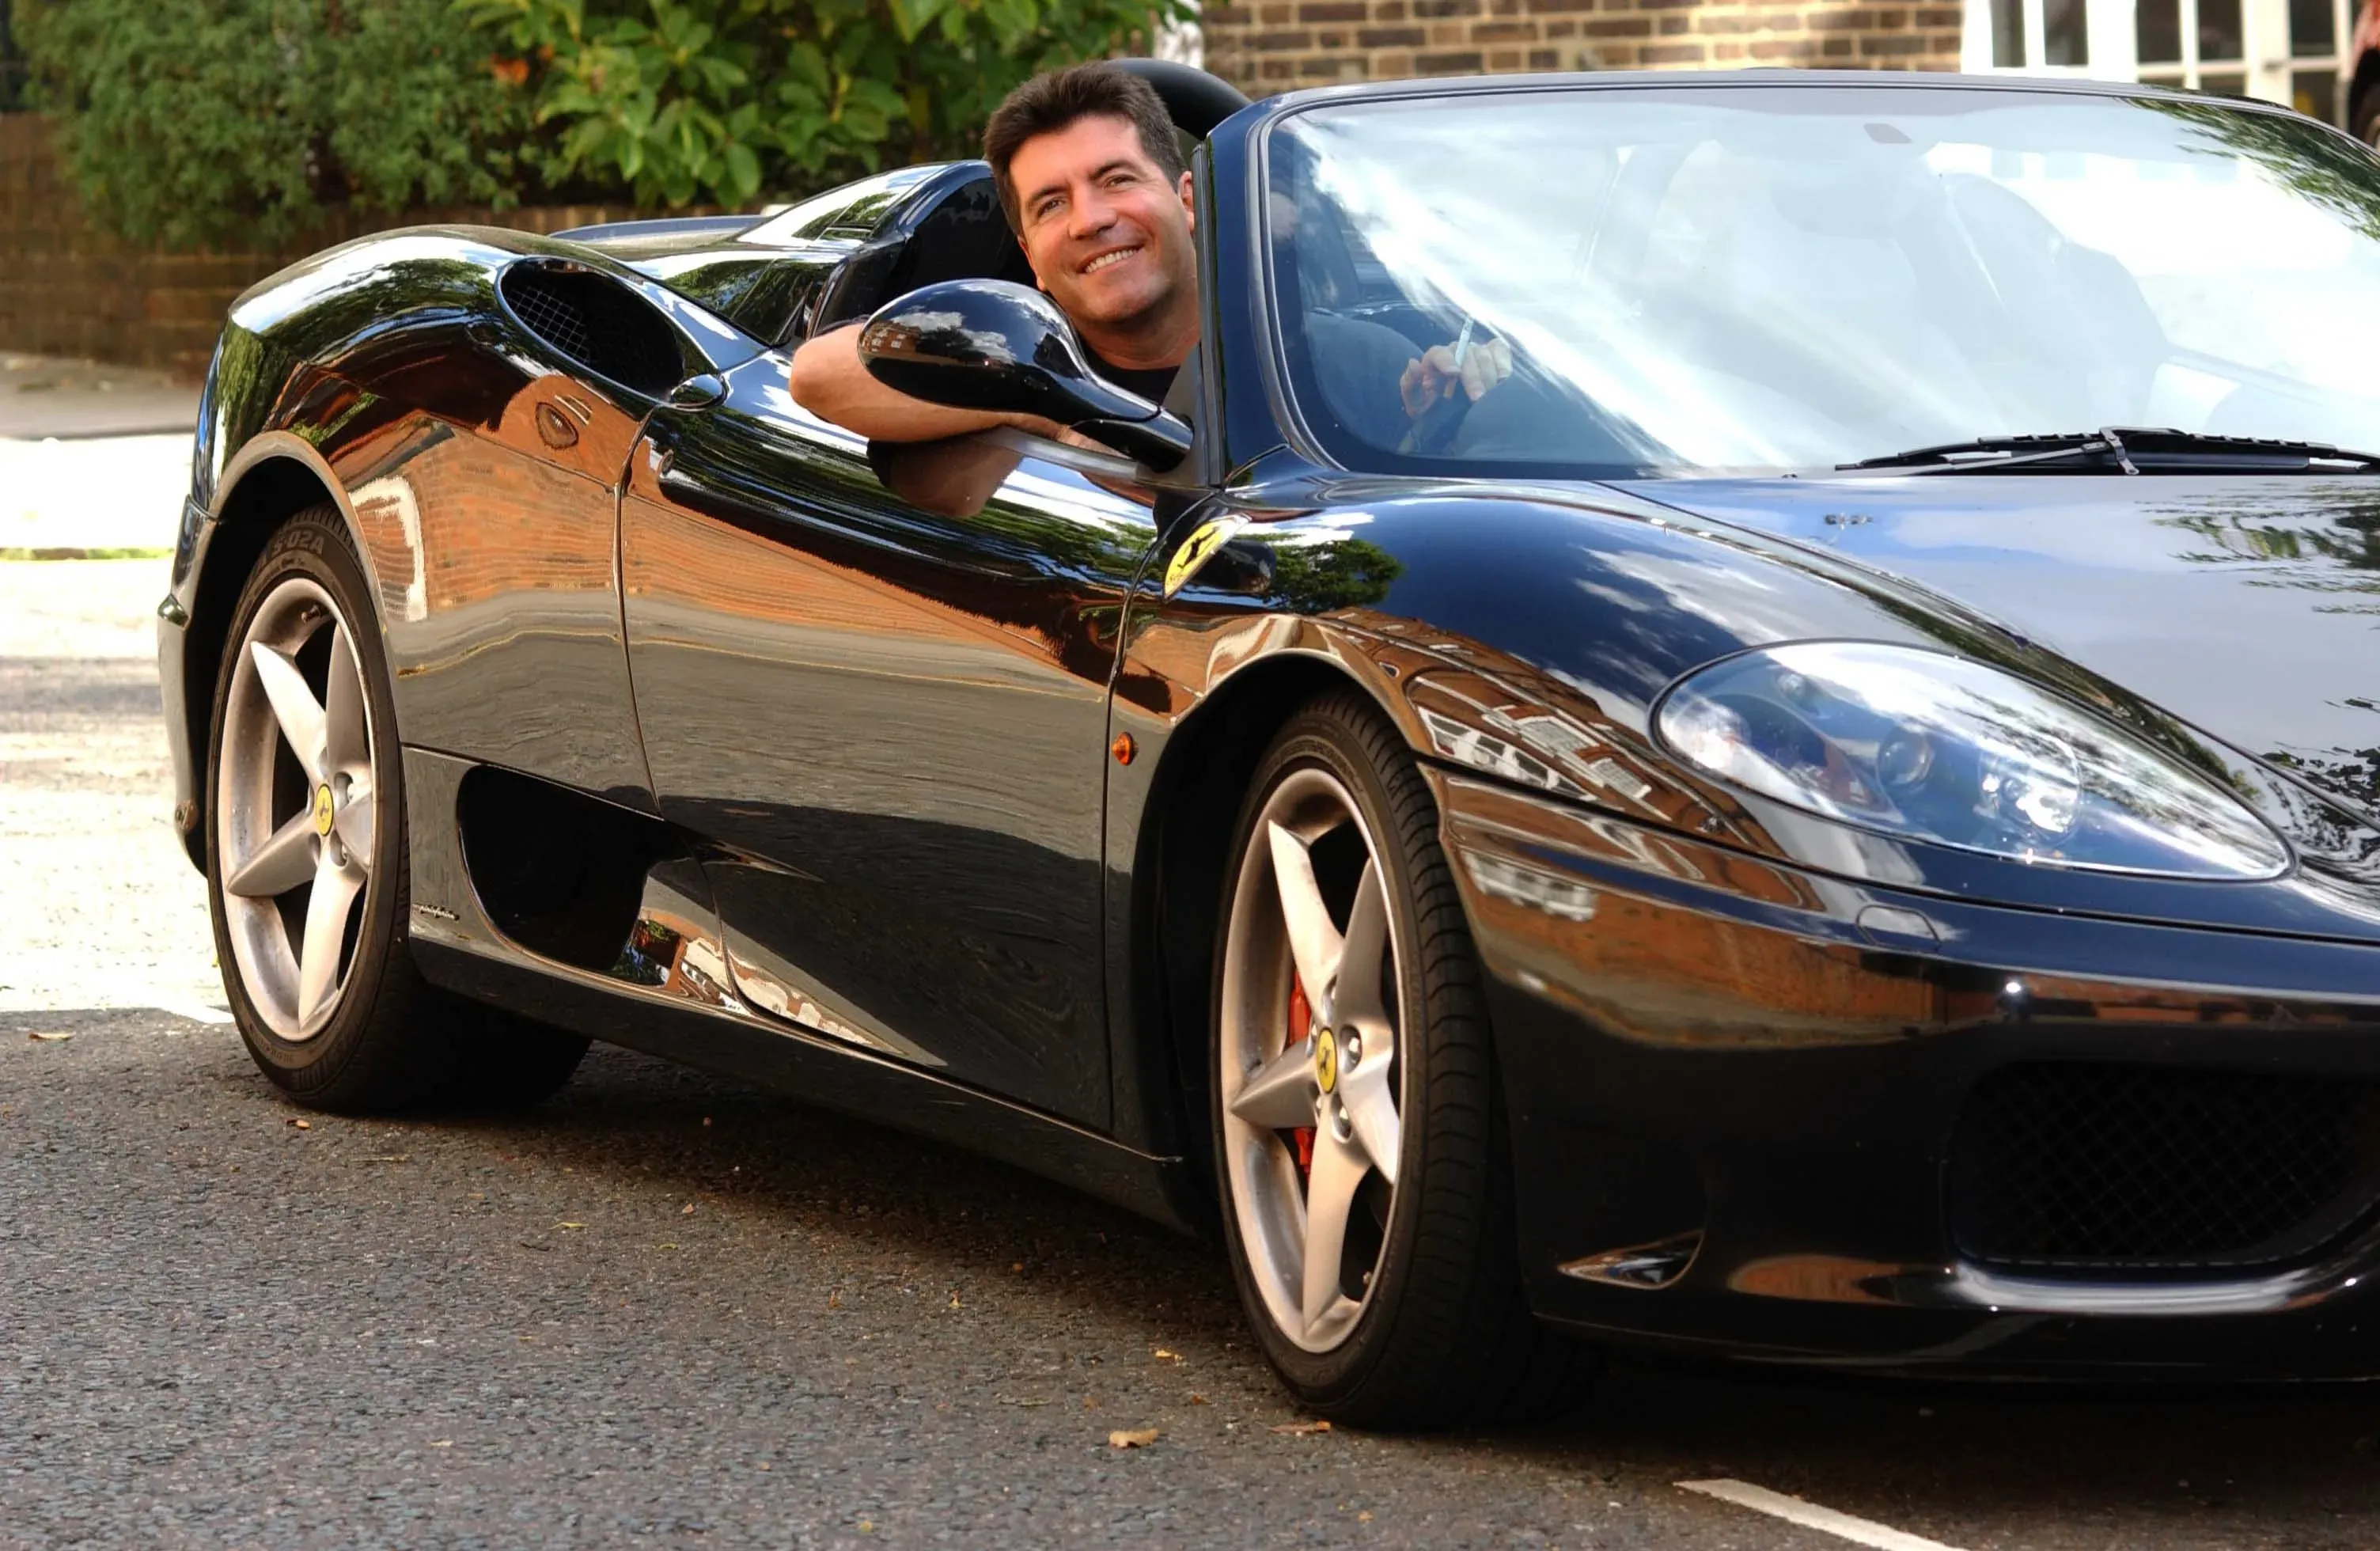 Simon Cowell's Black Ferrari 360 Spider